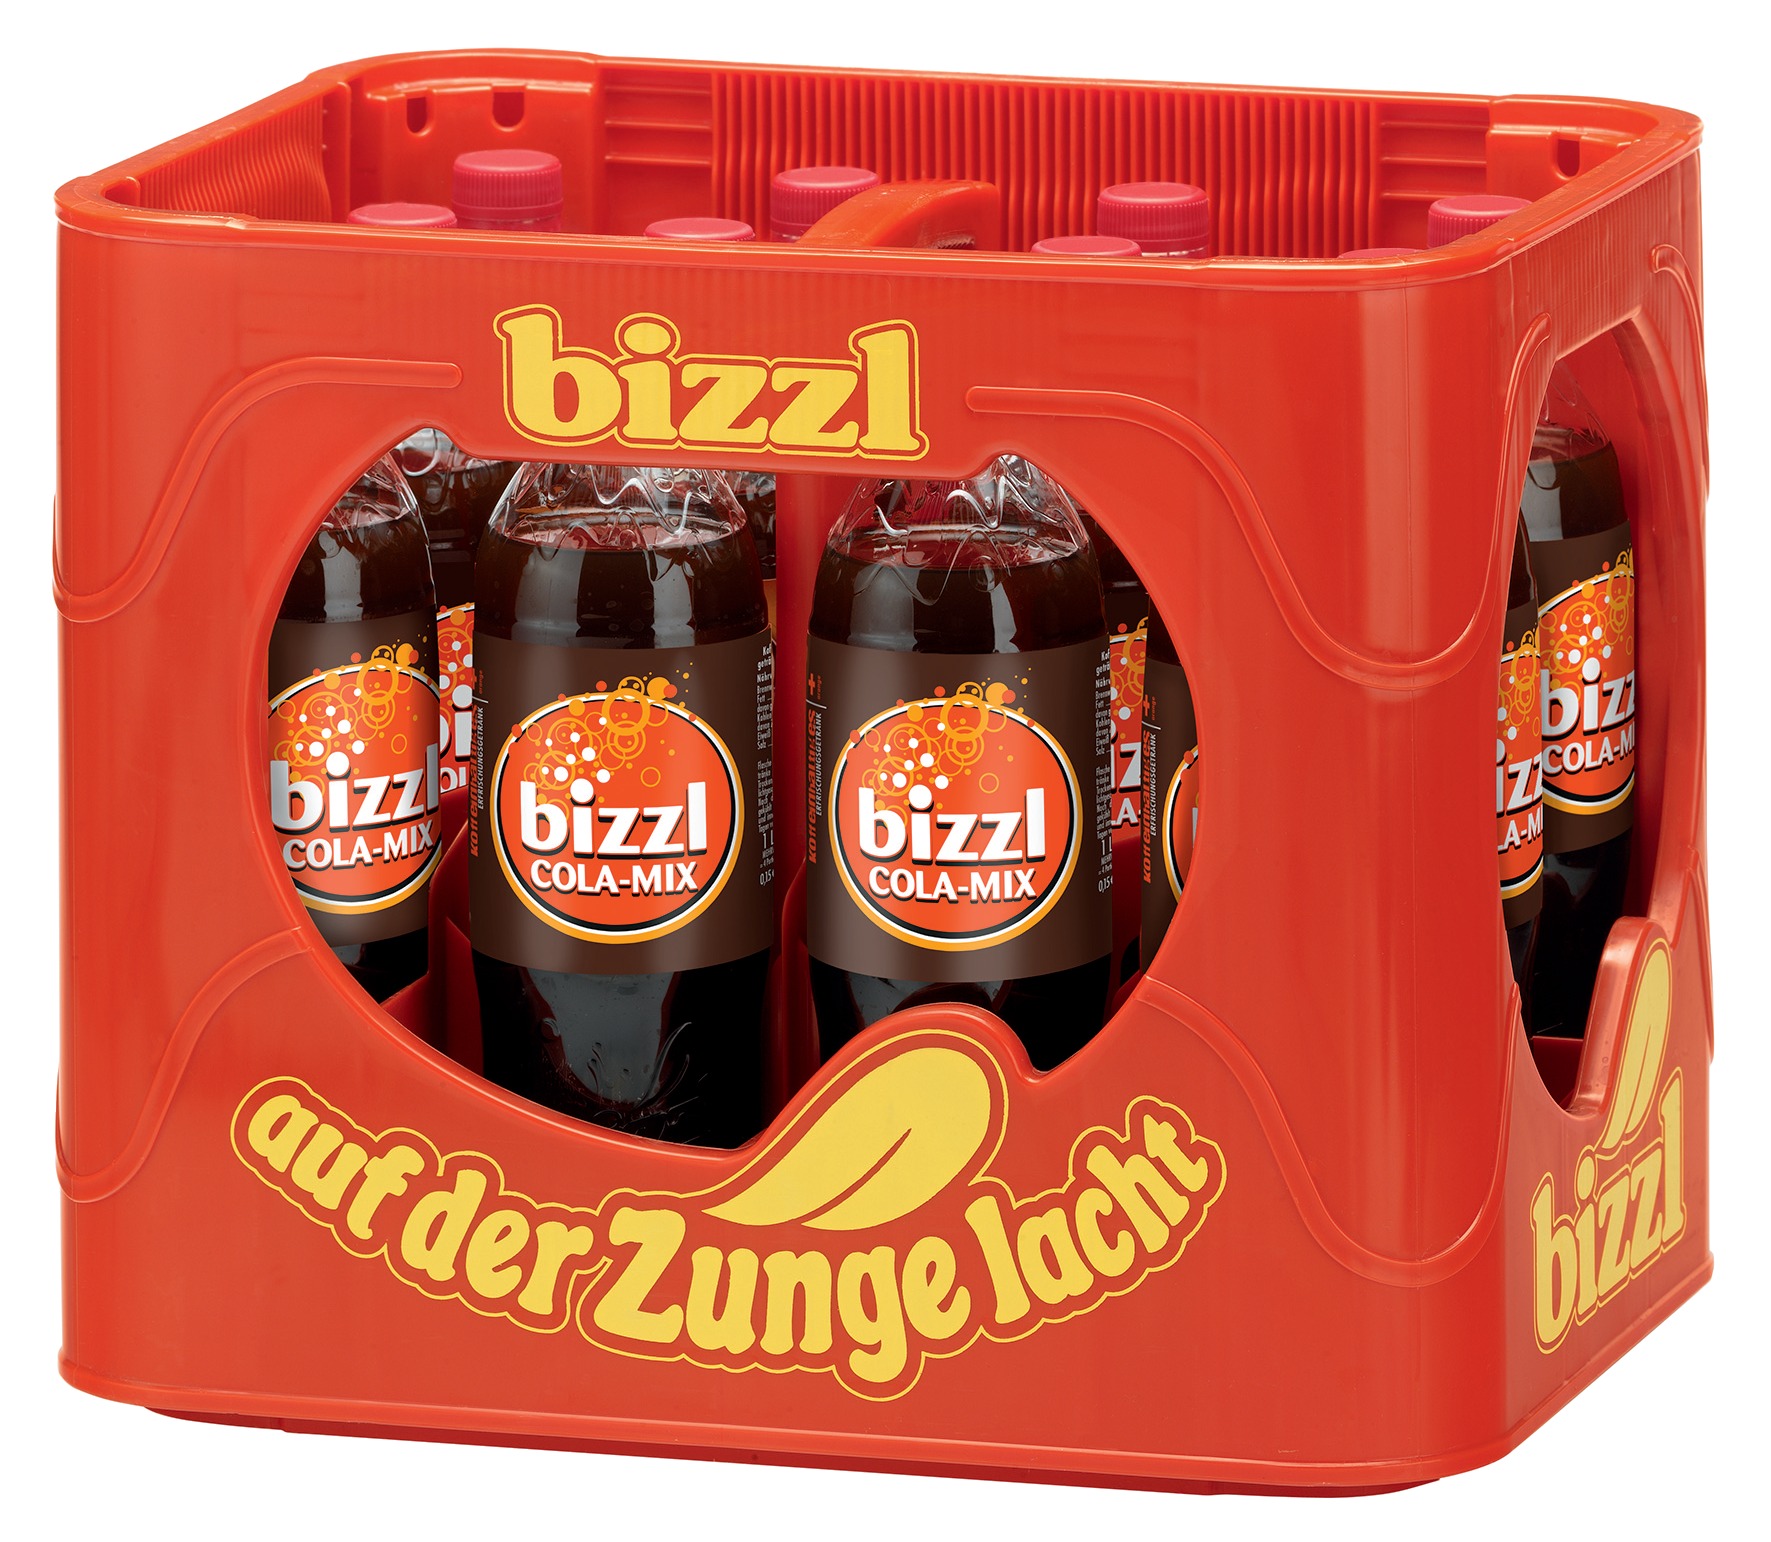 Bizzl Cola-Mix